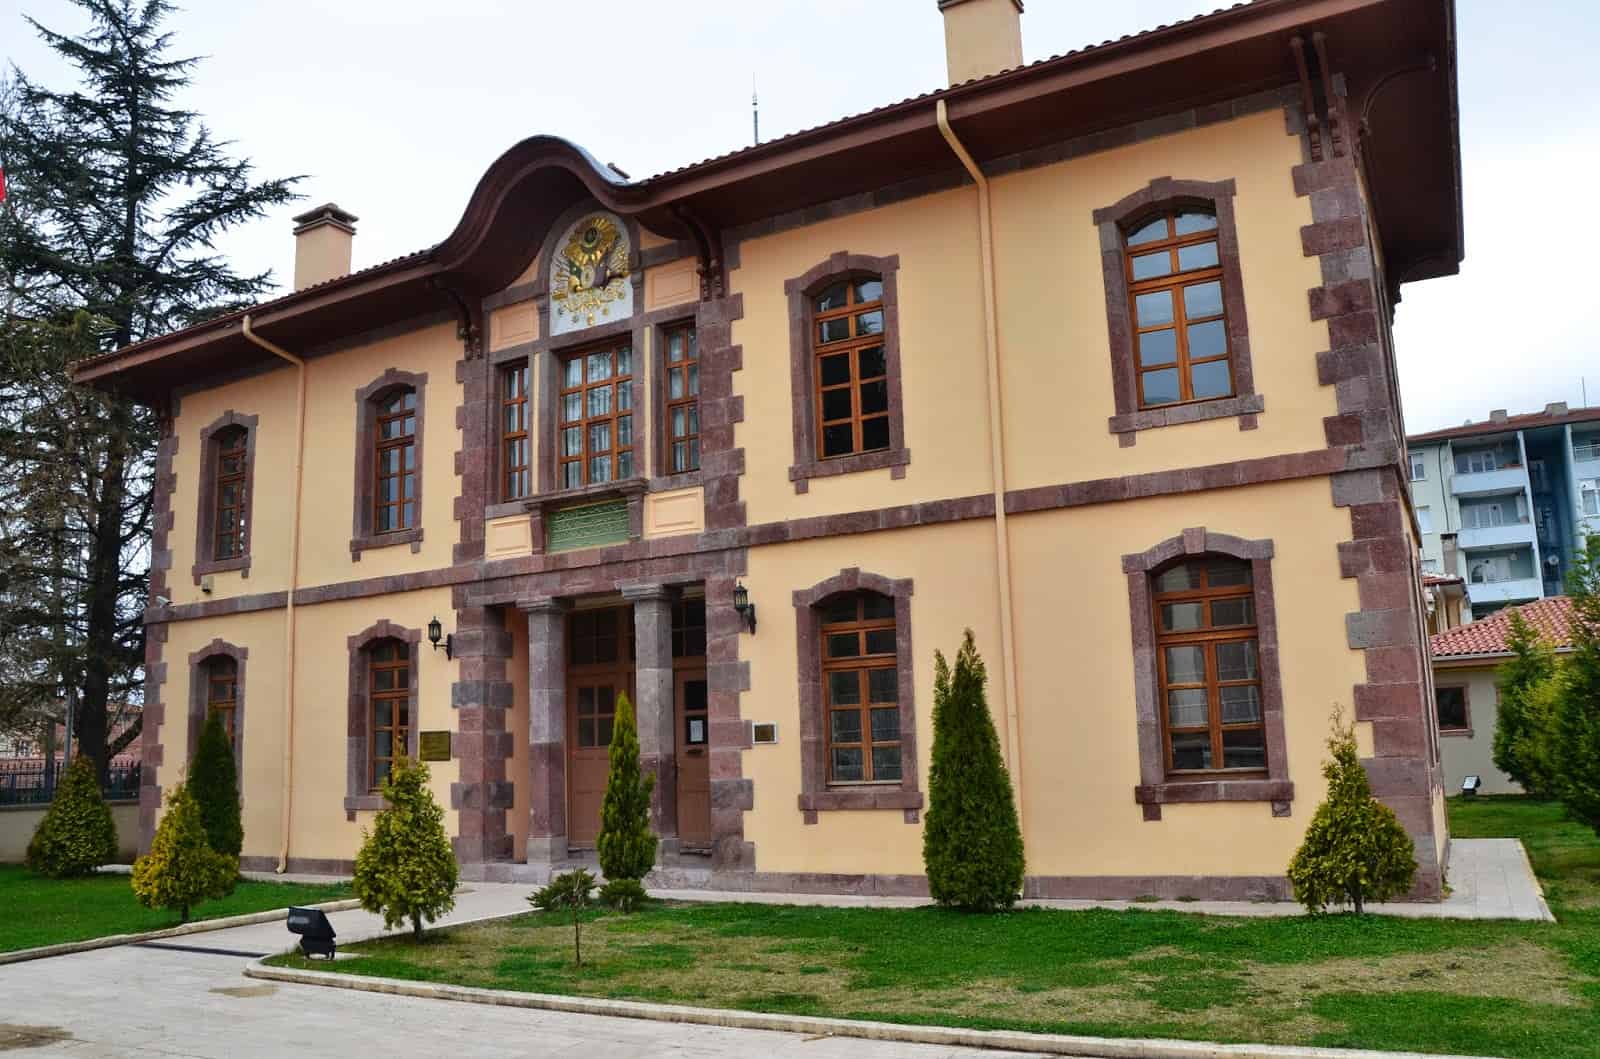 Ottoman school in Söğüt, Turkey